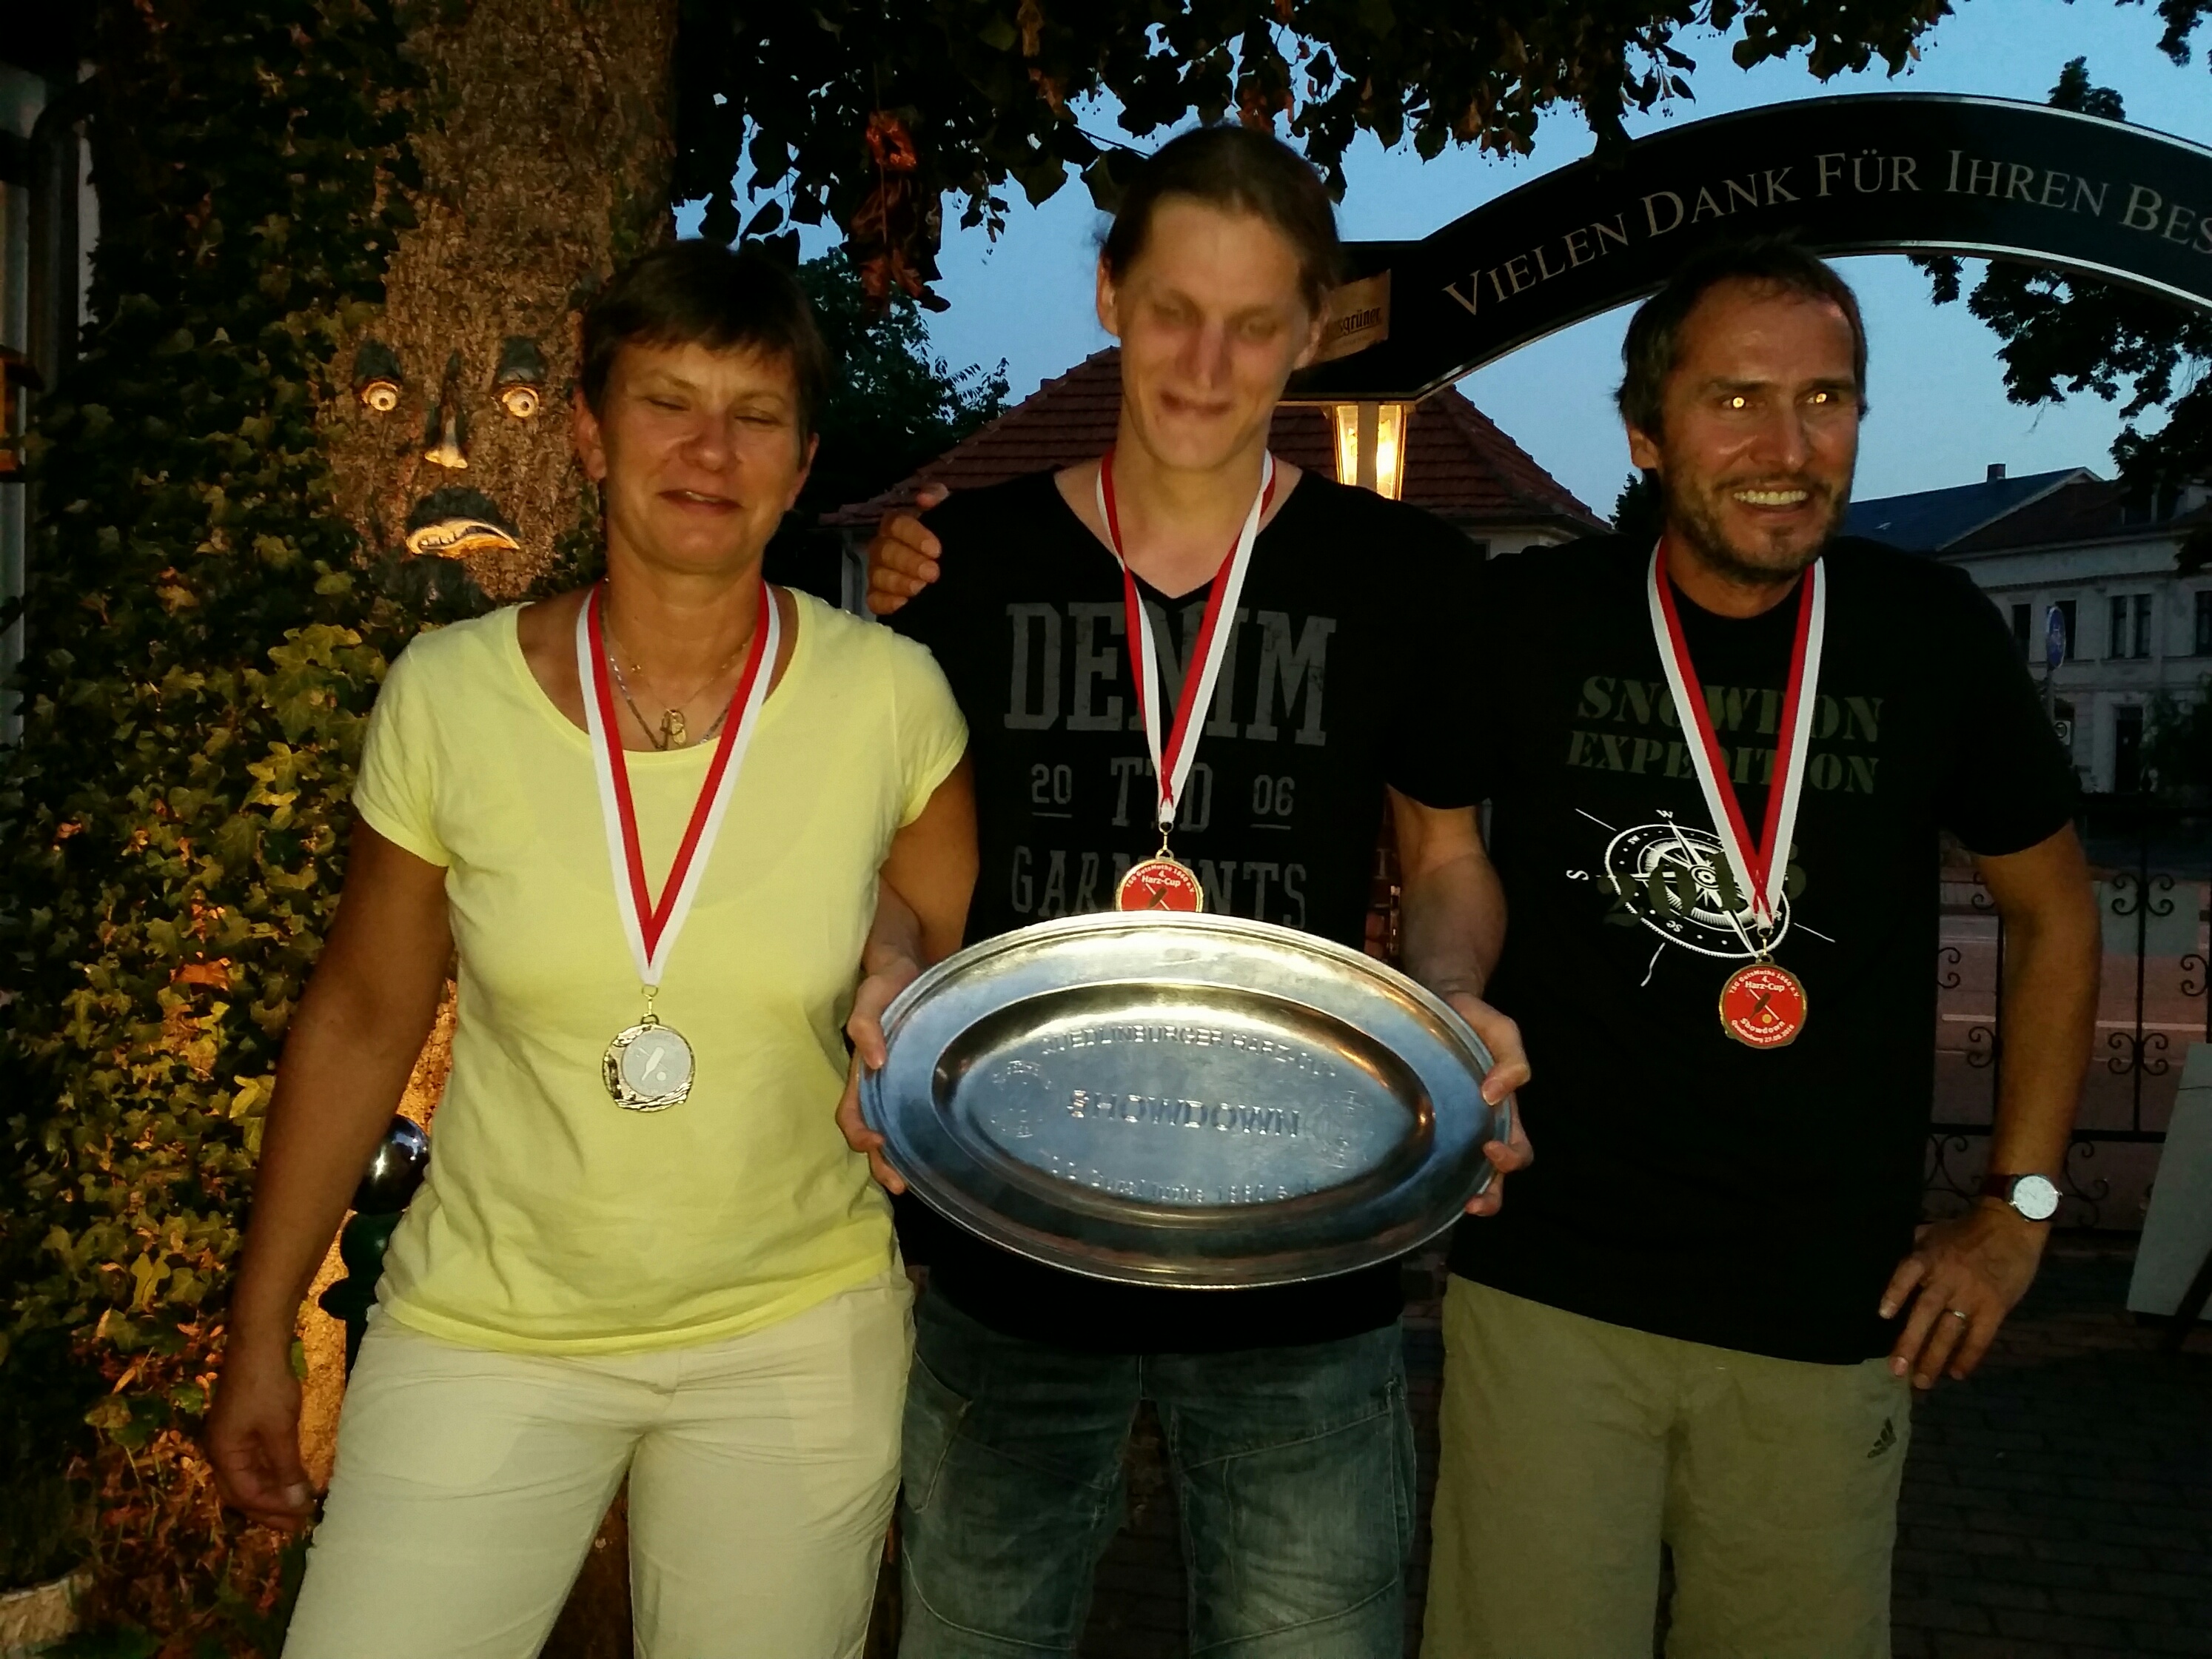 Von links nach rechts: Bettina, Thade und Lutz jeweils mit Medaille sowie Thade mit Siegerschale